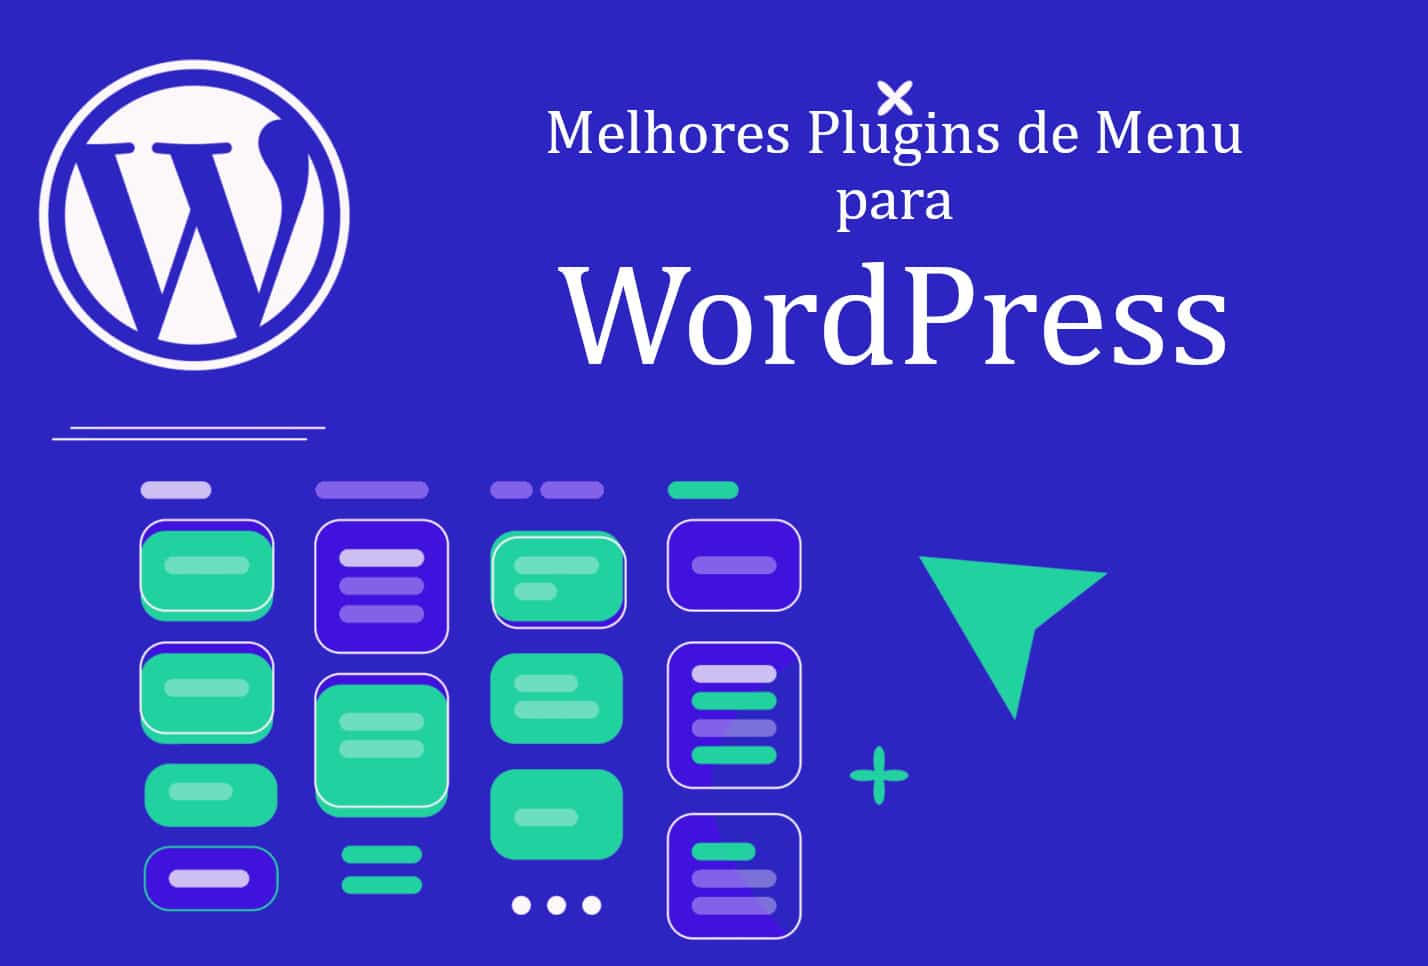 Melhores plugins de menu para wordpress em 2021 | 854290c6 capa | desenvolvimento, pc, plugins, site, tecnologia, wordpress | plugins de pagamento wordpress dicas/guias